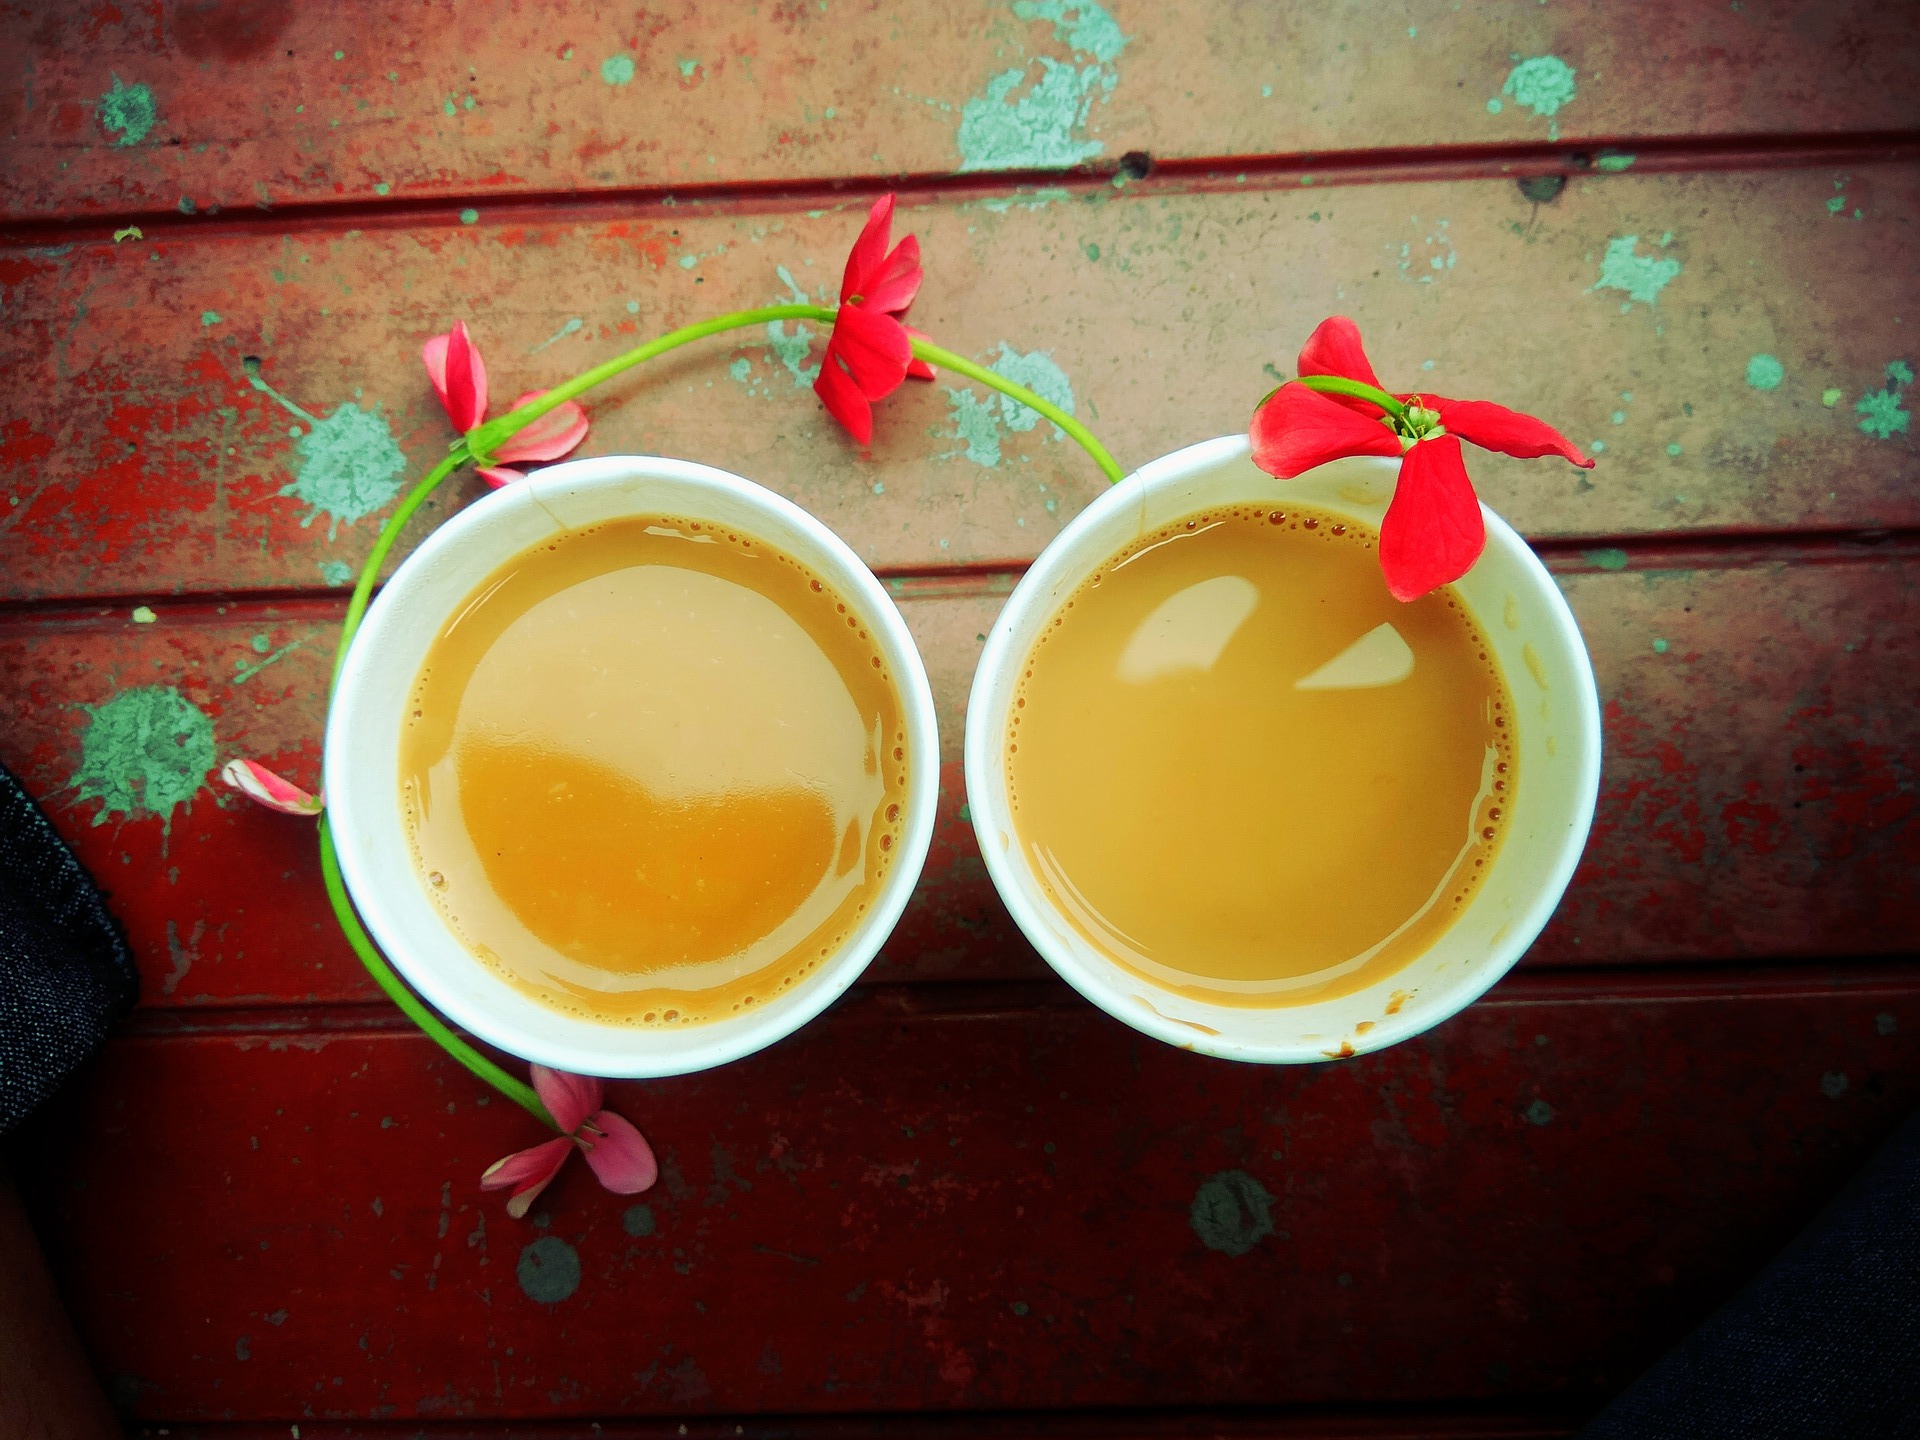 bio, chai, chai definition, chai latte, chai latte recette, chai tea, chai thé, gazette, gazette bio, indien, masala, nature, recette, recette facile, santé, tchaï, thé, thé assam, thé chai, thé chai latté, thé chai latté recette, thé chai sachet, thé chaud, thé noir, thé tchaï